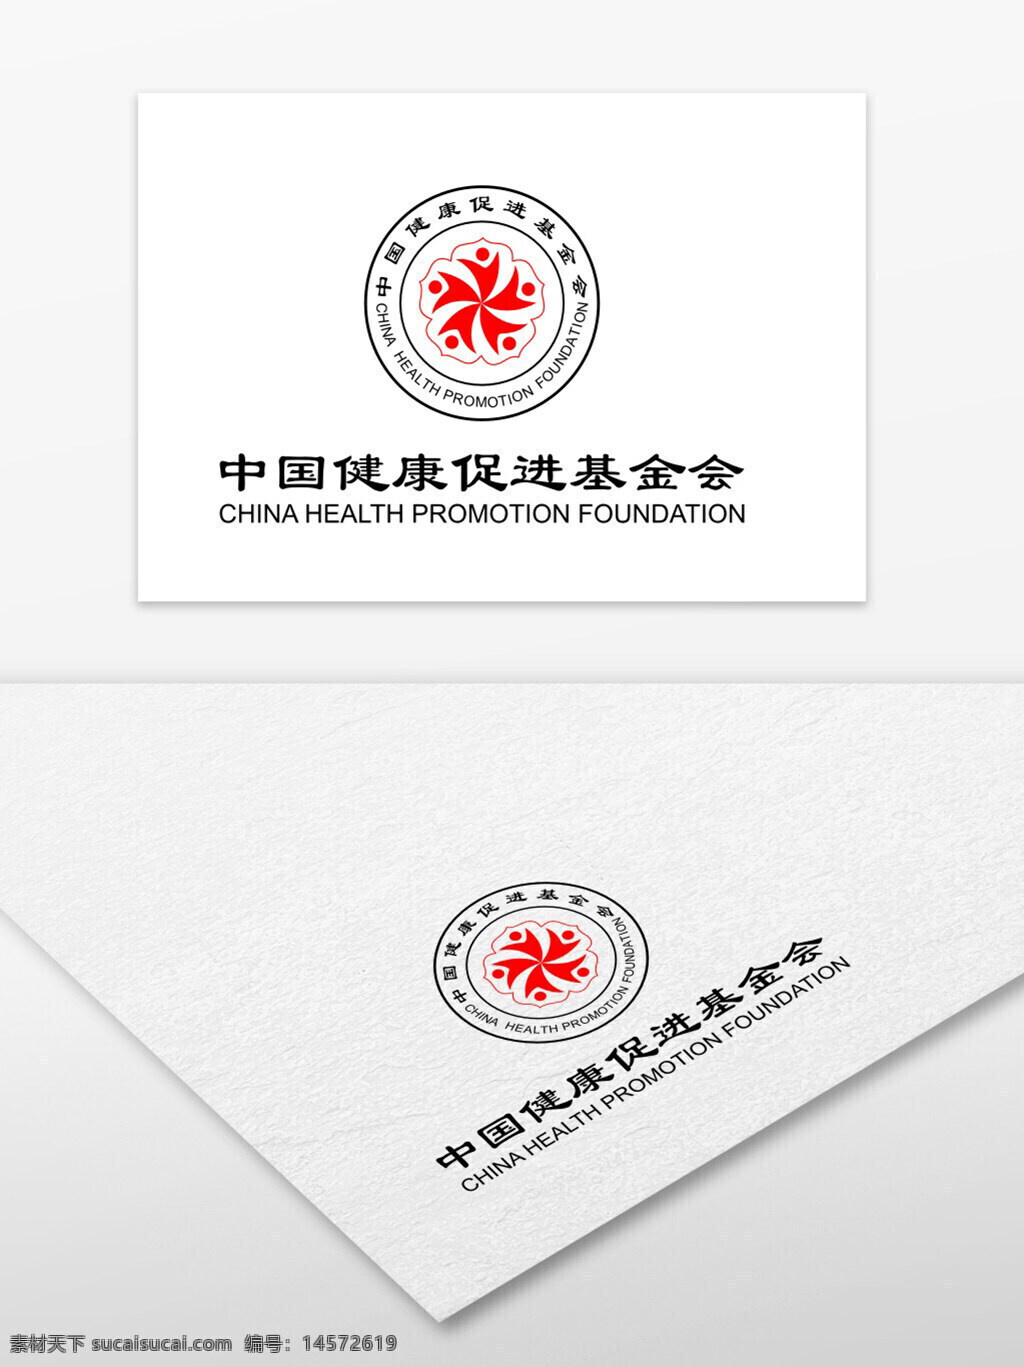 中国 健康促进 基金会 卫生部 2006年 民政部 全国性 公益性 公募组织 中医药管理局 医药界 社会活动家 独立社会团体